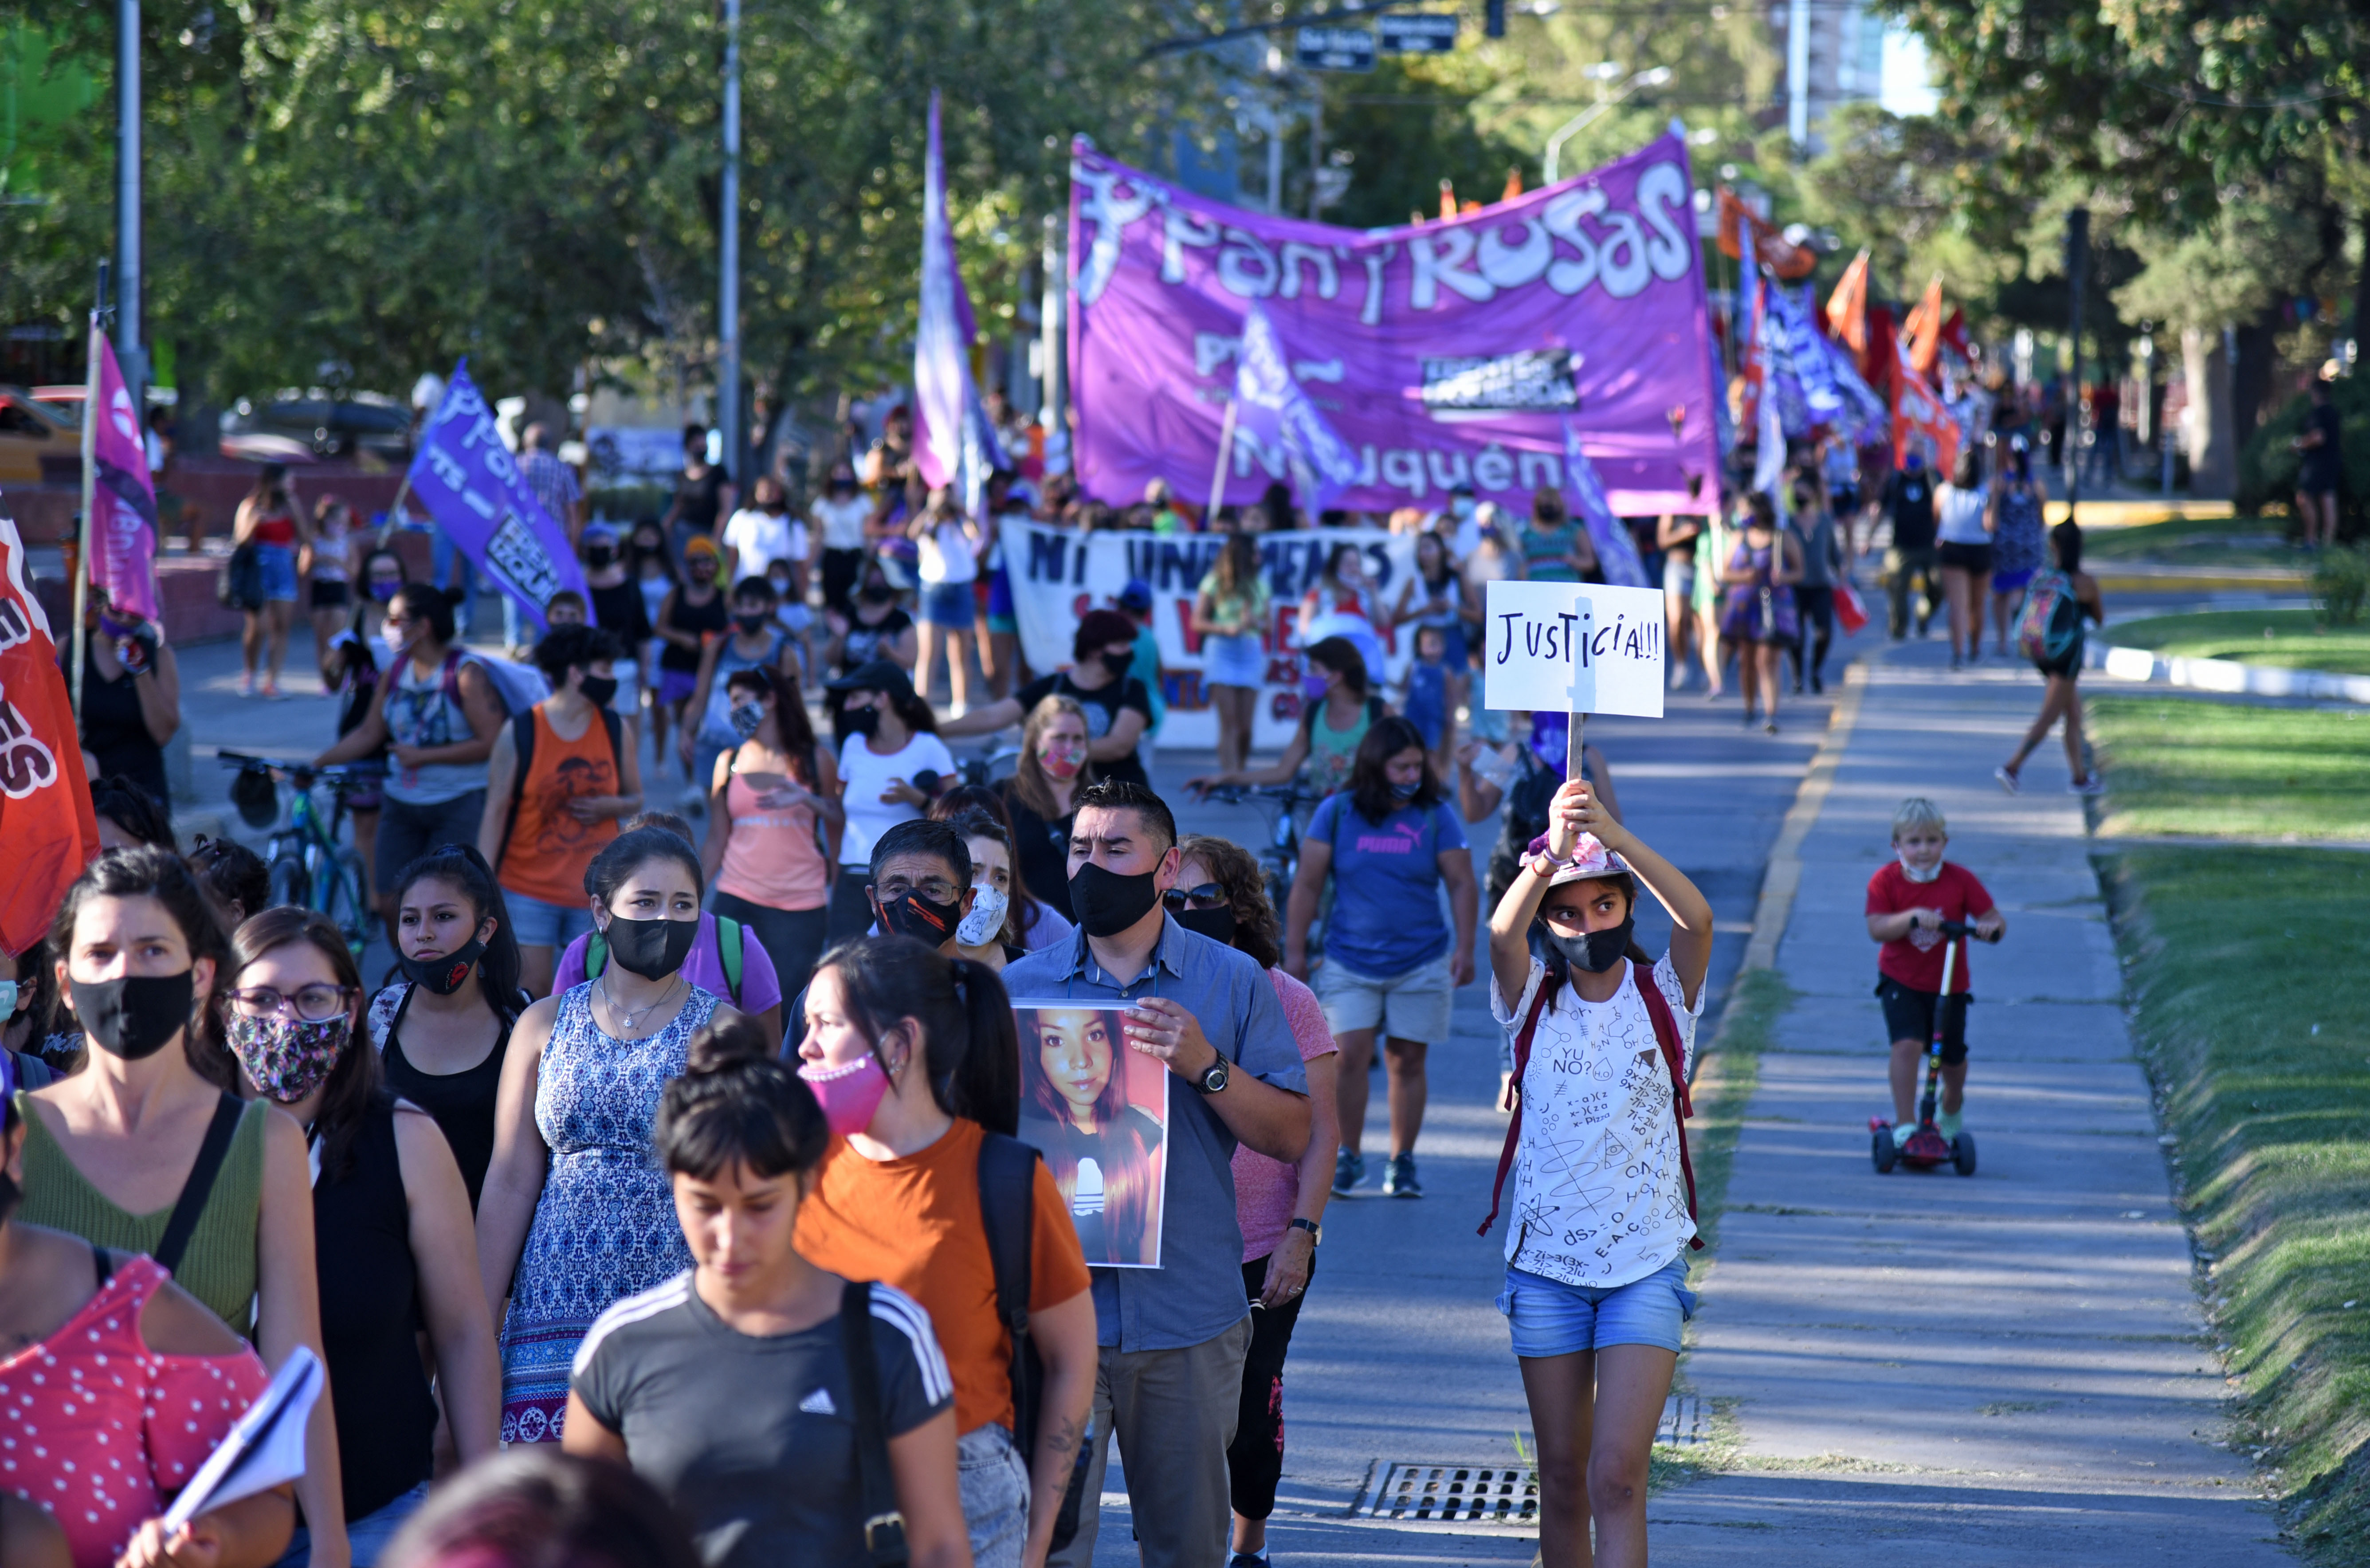 El miércoles 24 se desarrolló una marcha en la ciudad de Neuquén en reclamo de justicia. Foto Florencia Salto.